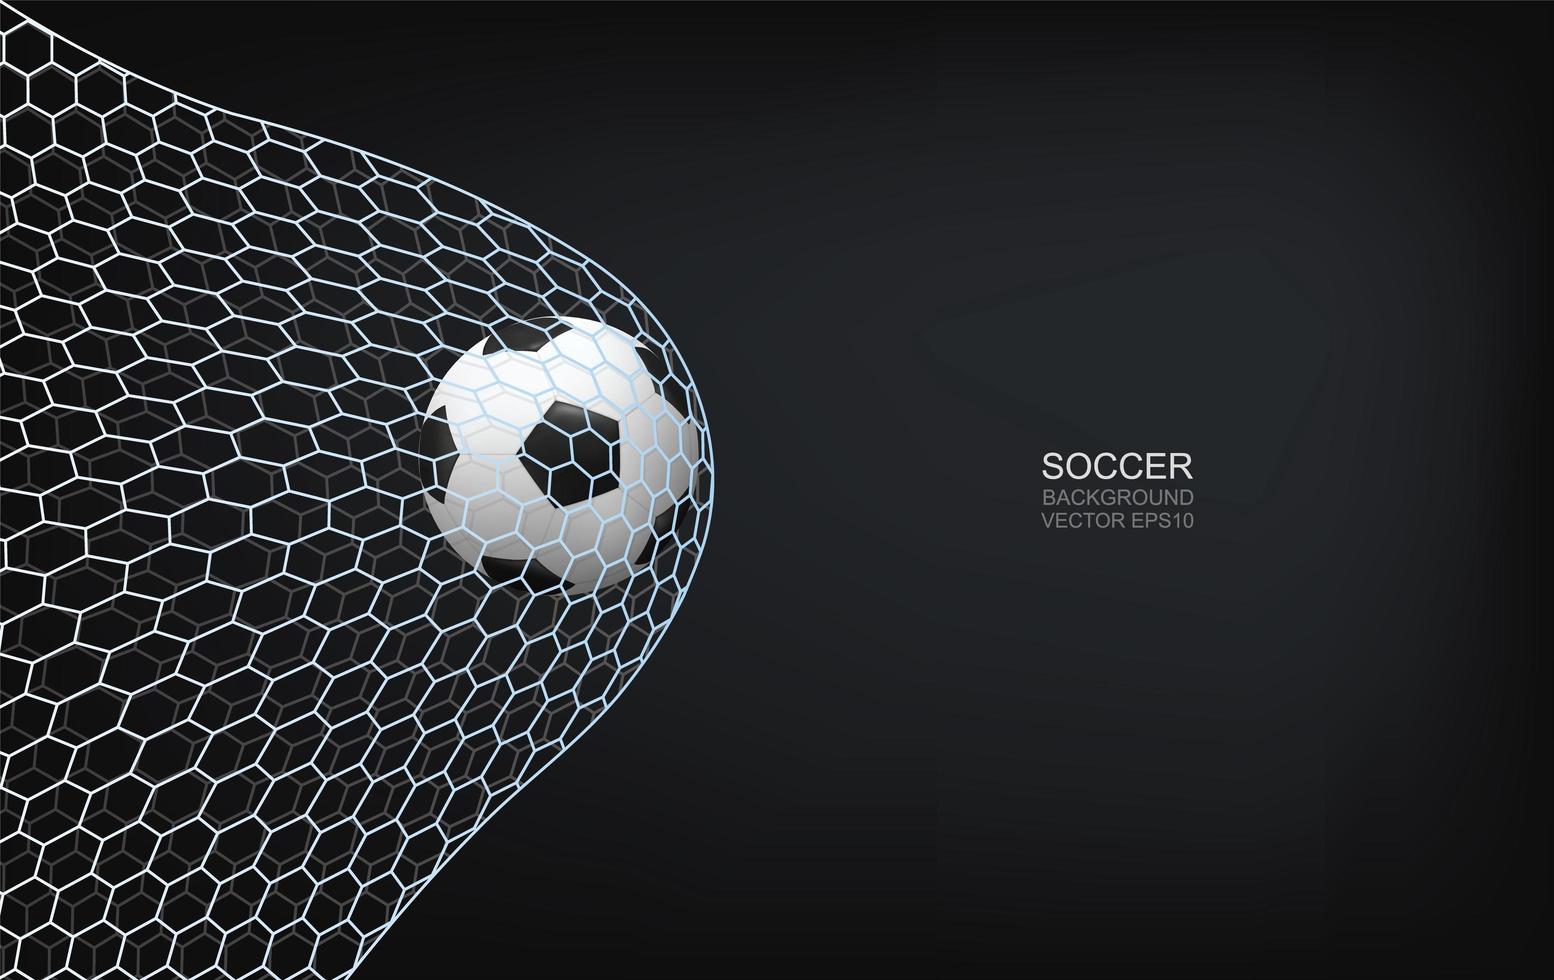 Fußball oder Fußball im Netz nach oben fliegen vektor